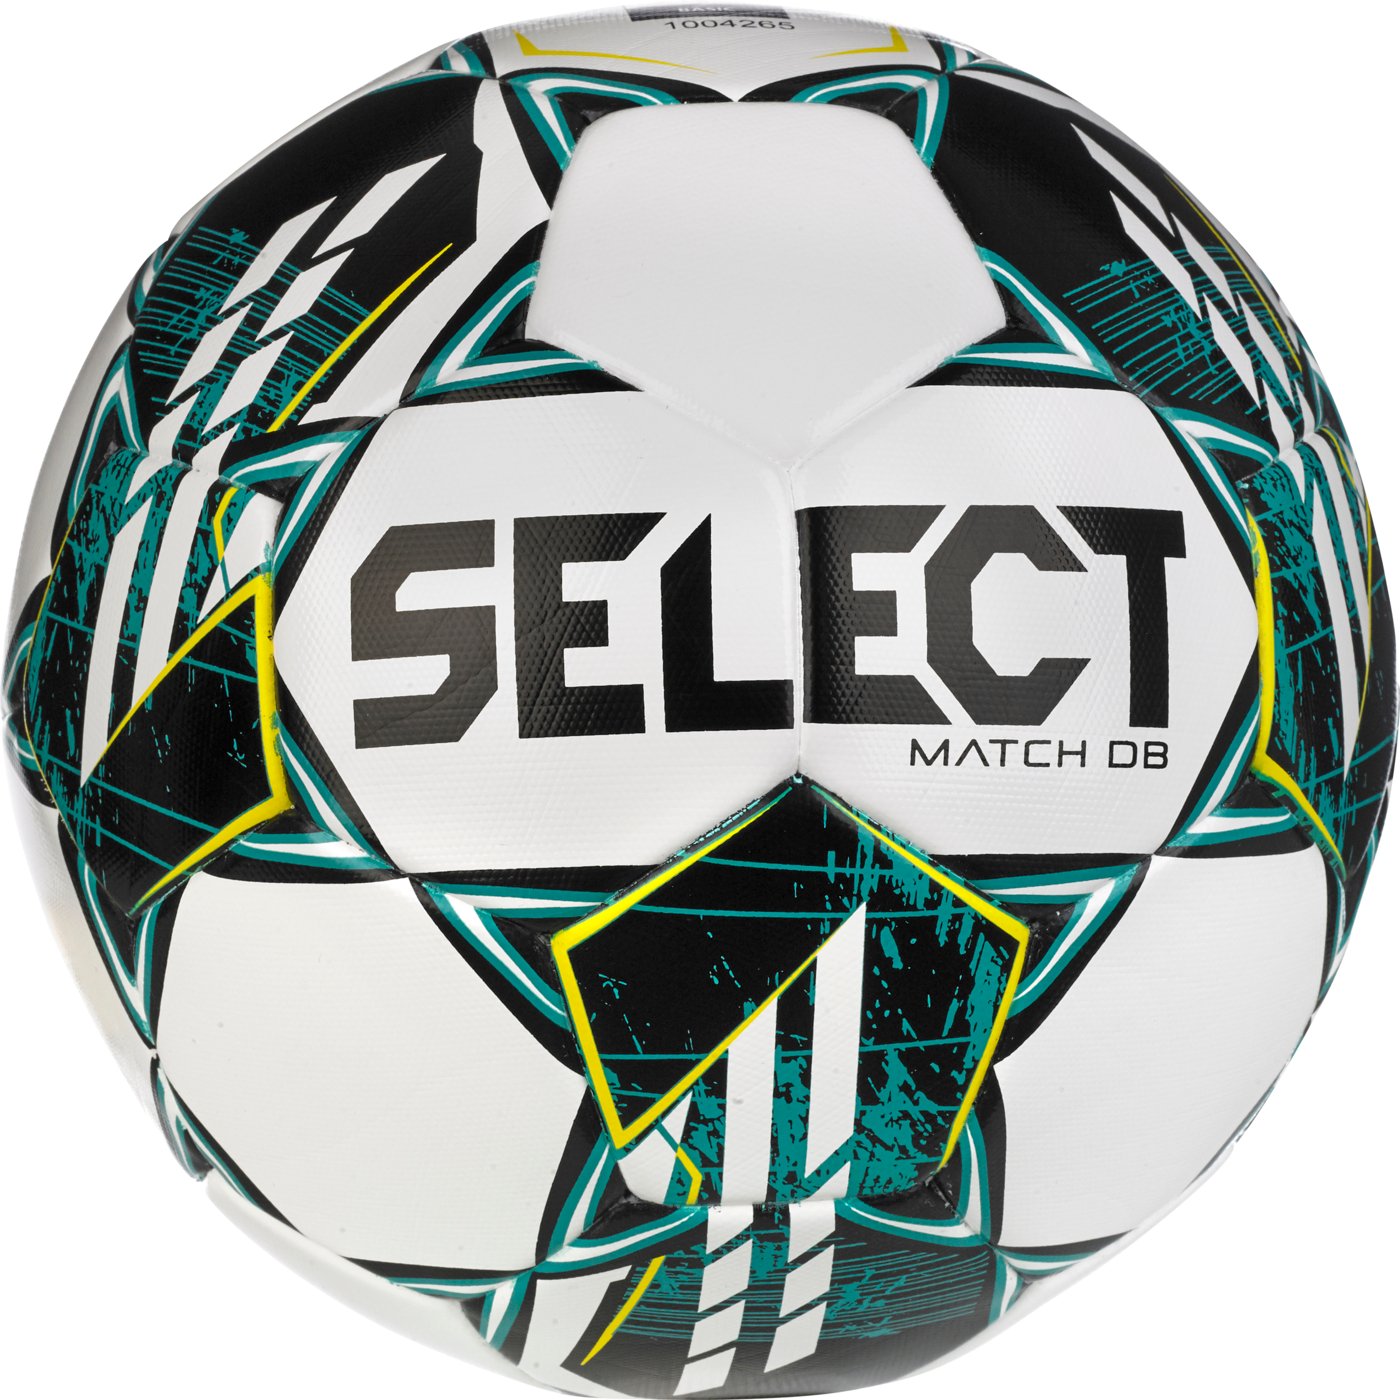 М'яч футбольний SELECT Match DB v23 (338) біл/зелений, 5, 5